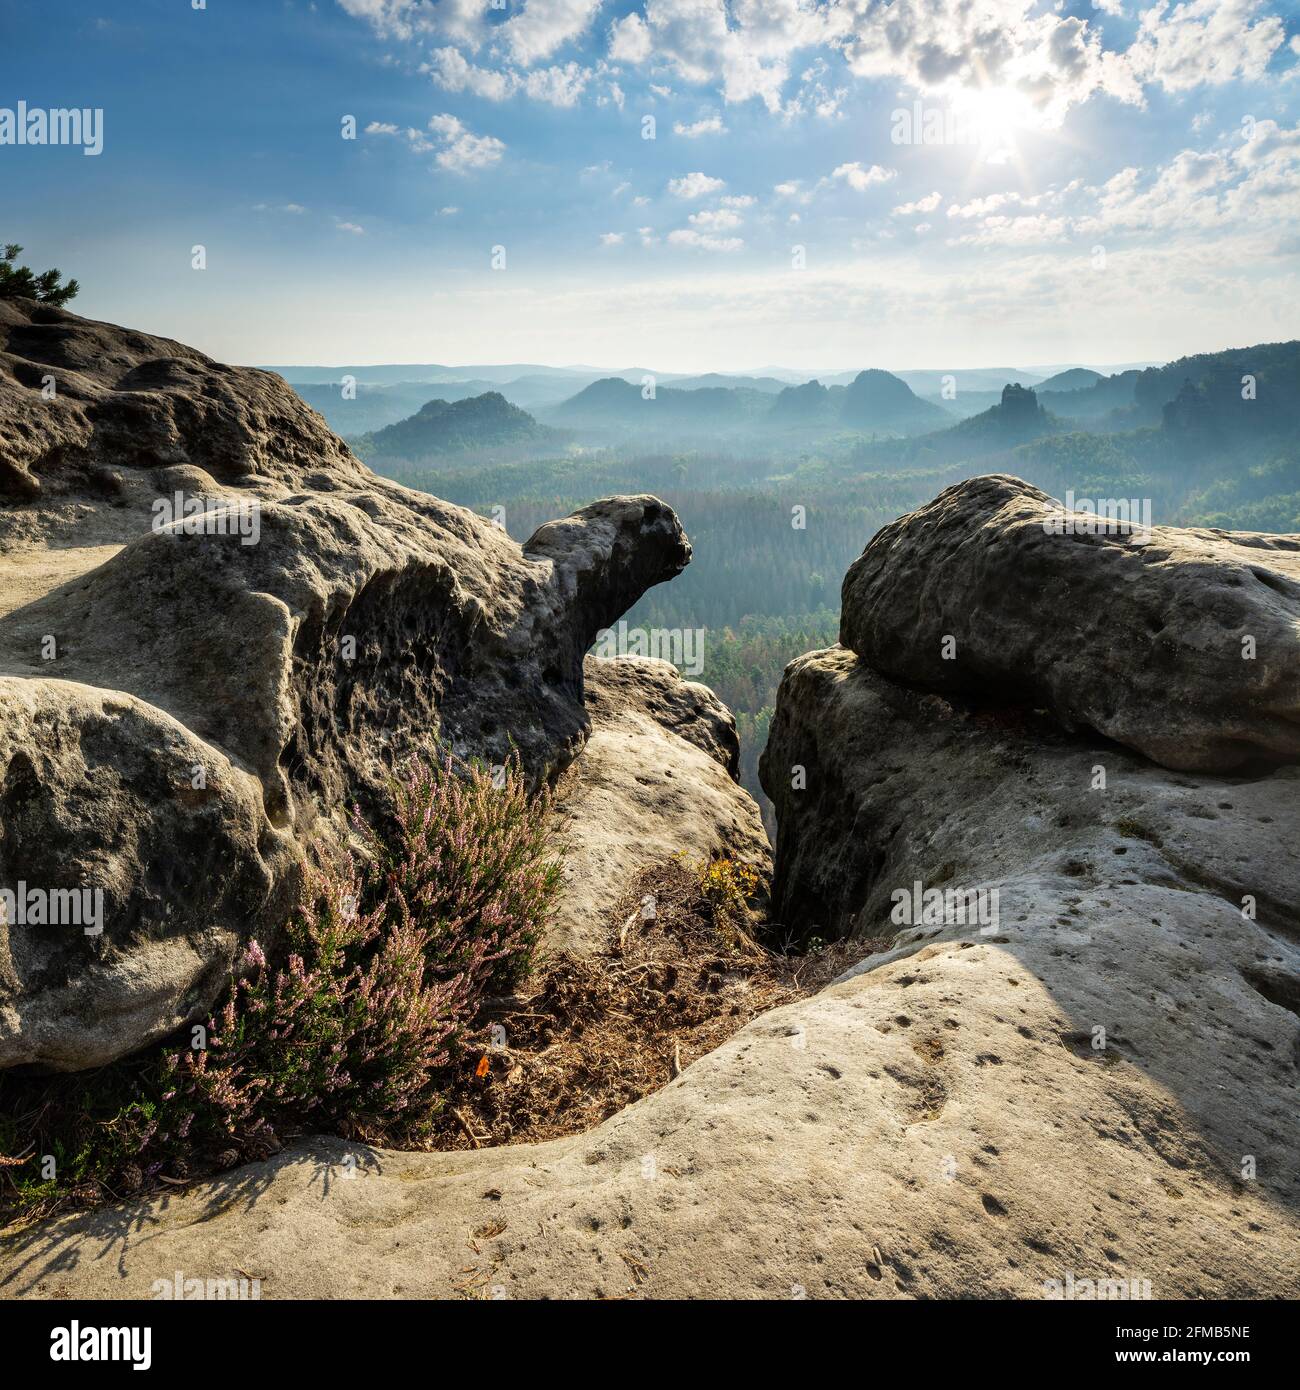 Germania, Sassonia, montagne di arenaria dell'Elba, Parco Nazionale della Svizzera sassone, vista sul Kleiner Zschand con erica in fiore e fessura alla luce del mattino Foto Stock